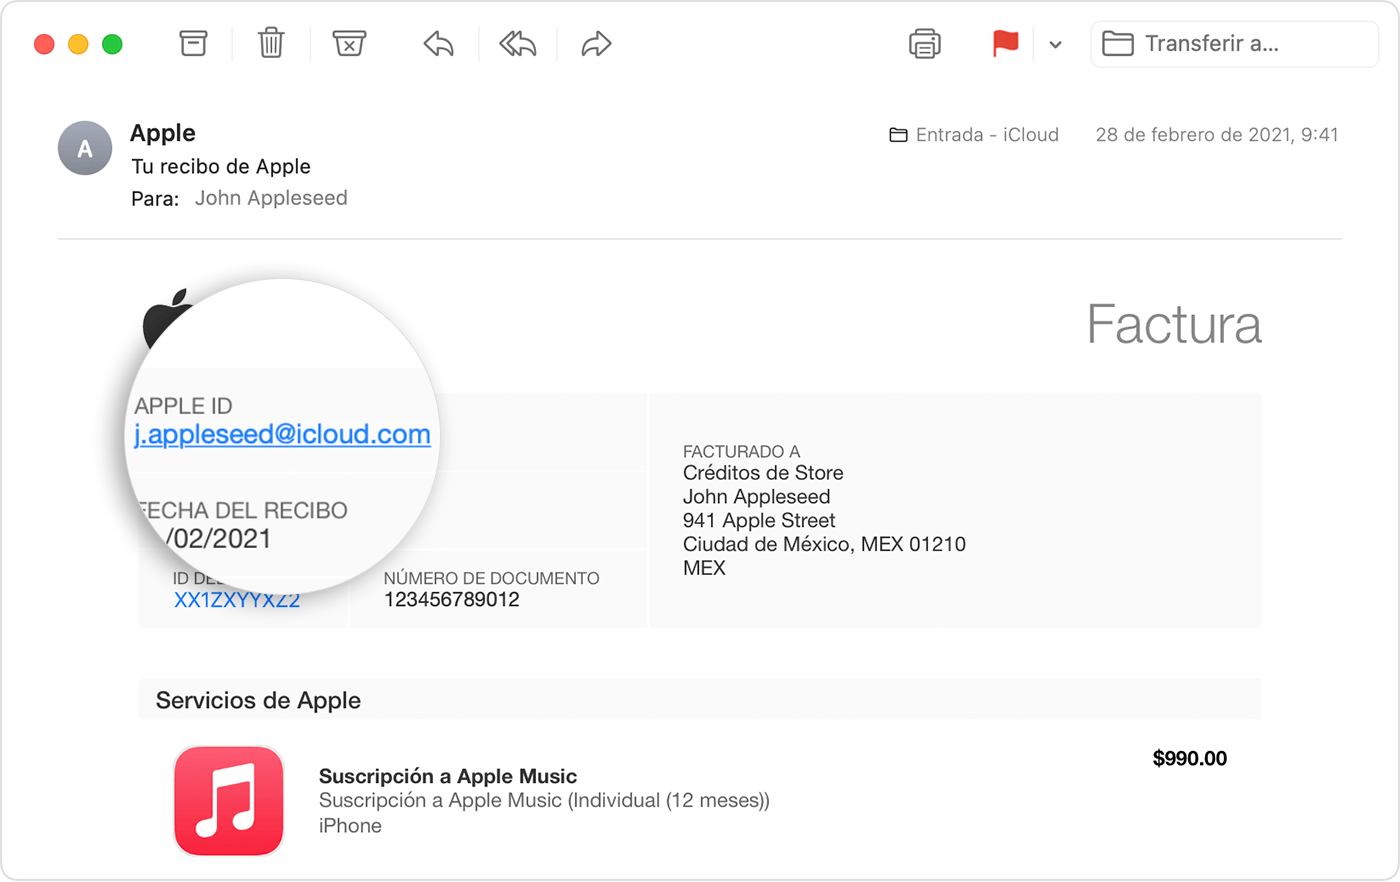 Un recibo enviado por correo electrónico en el que se muestra el Apple ID de la persona que compró la suscripción de Apple Music.